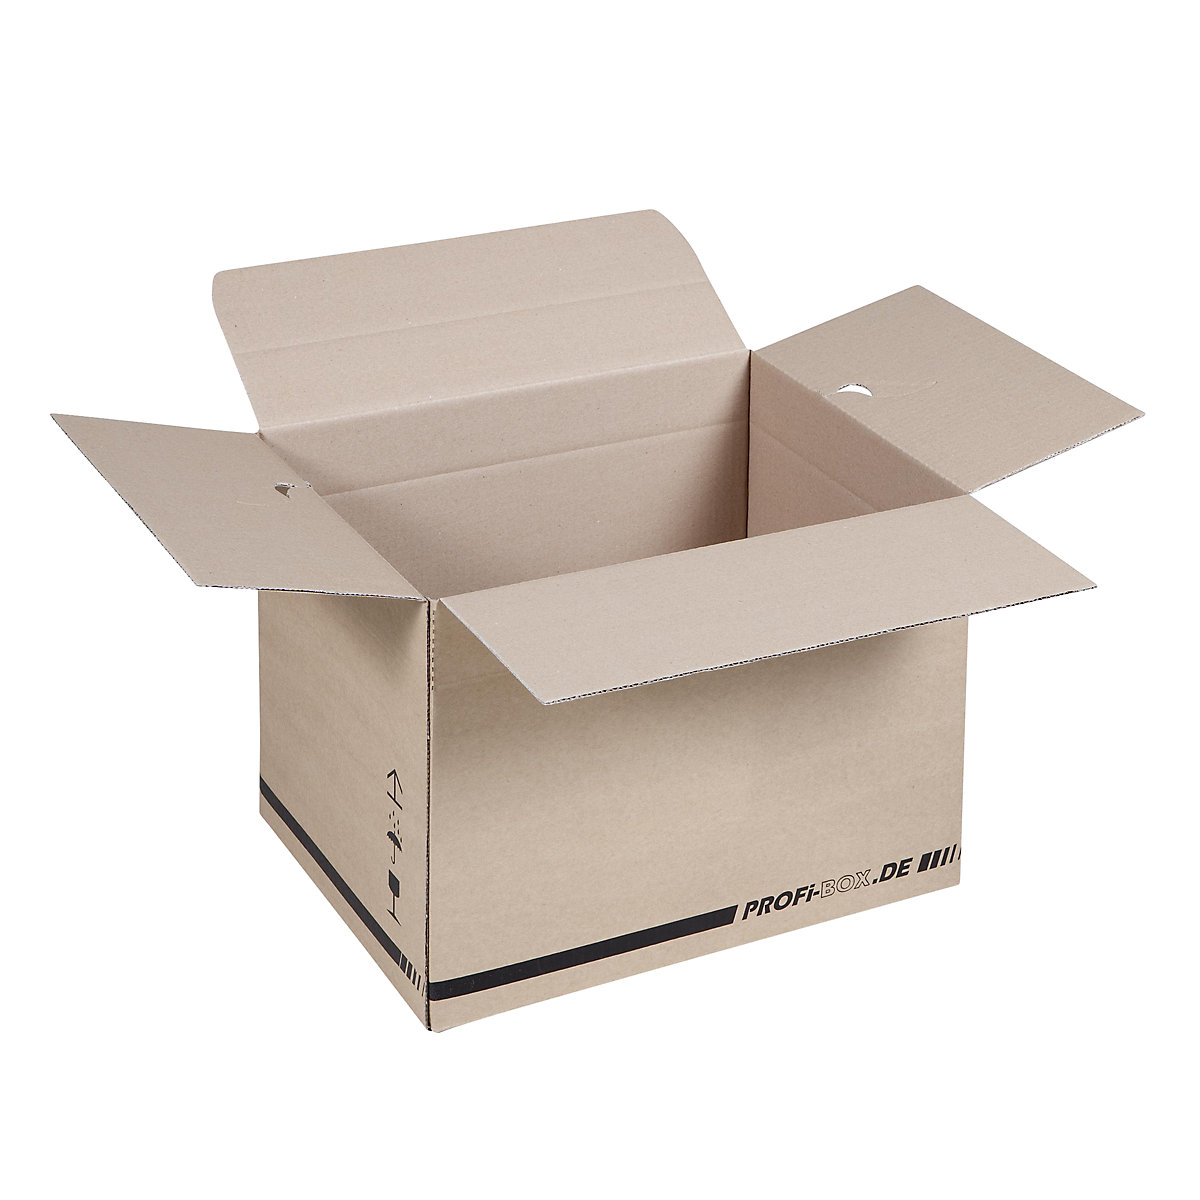 Profi box, z 1-vlnitej lepenky, FEFCO 0701, vnútorné rozmery 384 x 284 x 284 mm, OJ 50 ks-1